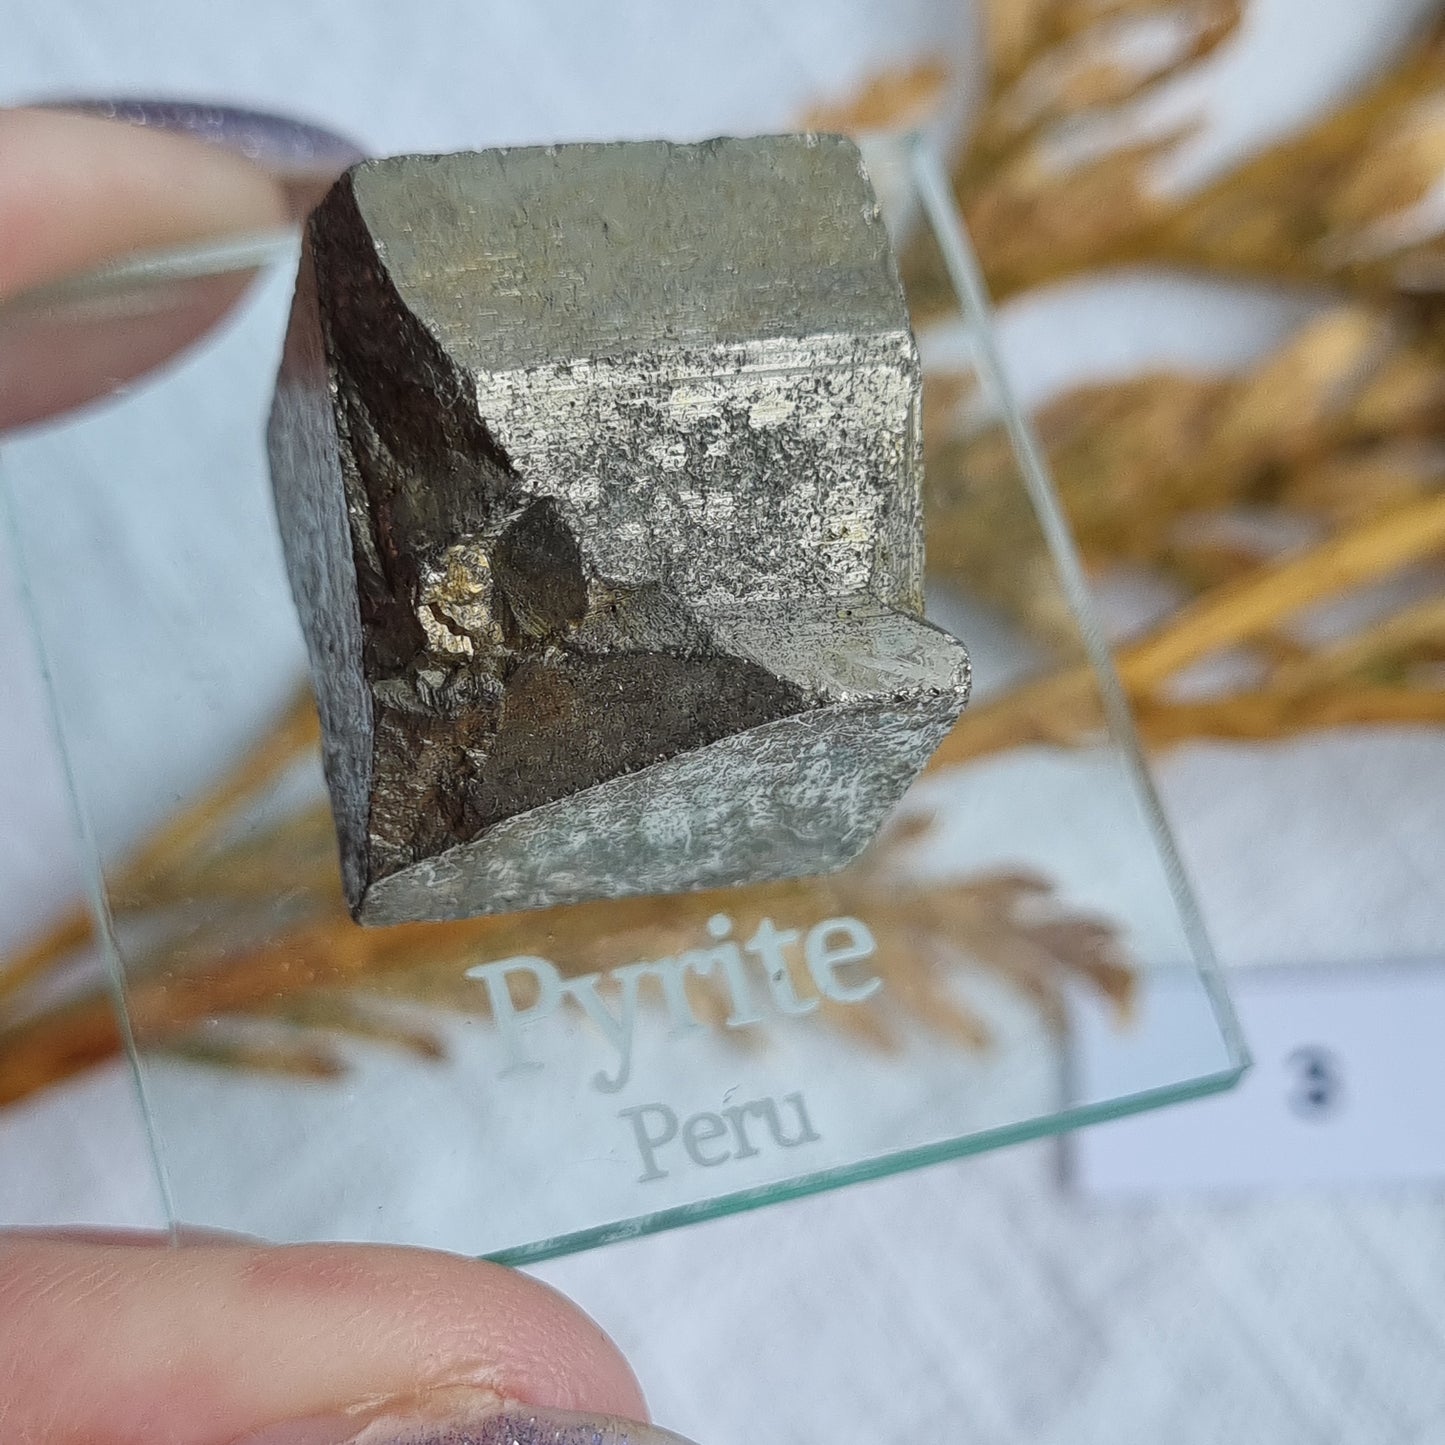 Cubic Pyrite Specimen - Peru - Sparrow and Fox